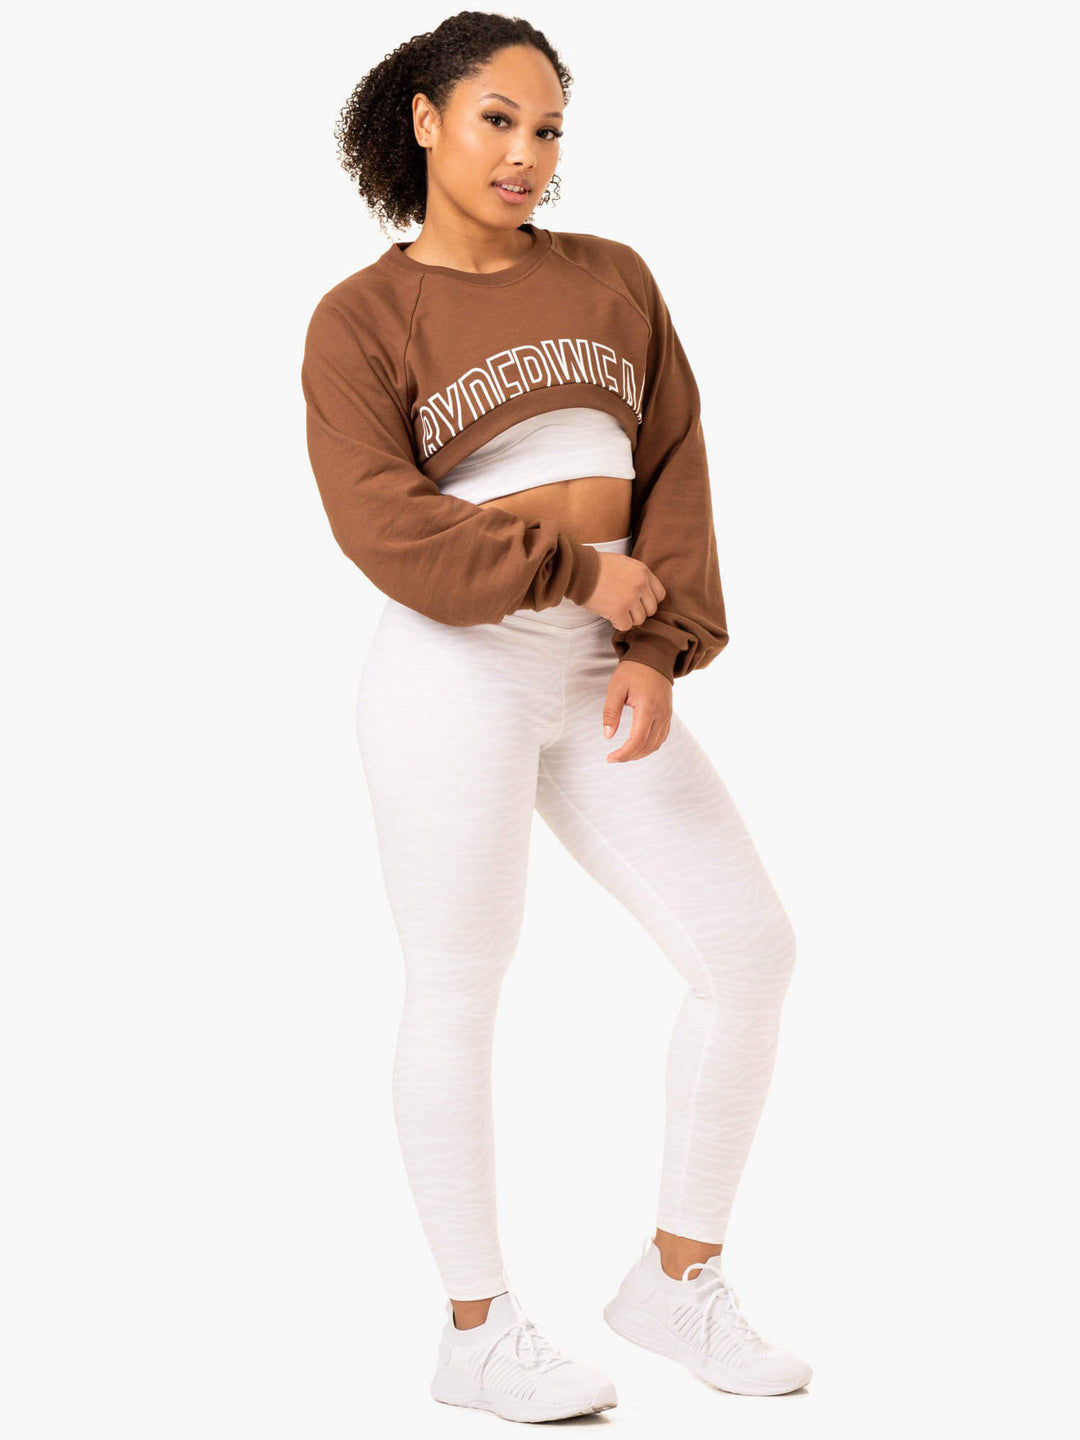 Emerge Super Crop Sweater - Chocolate - Ryderwear